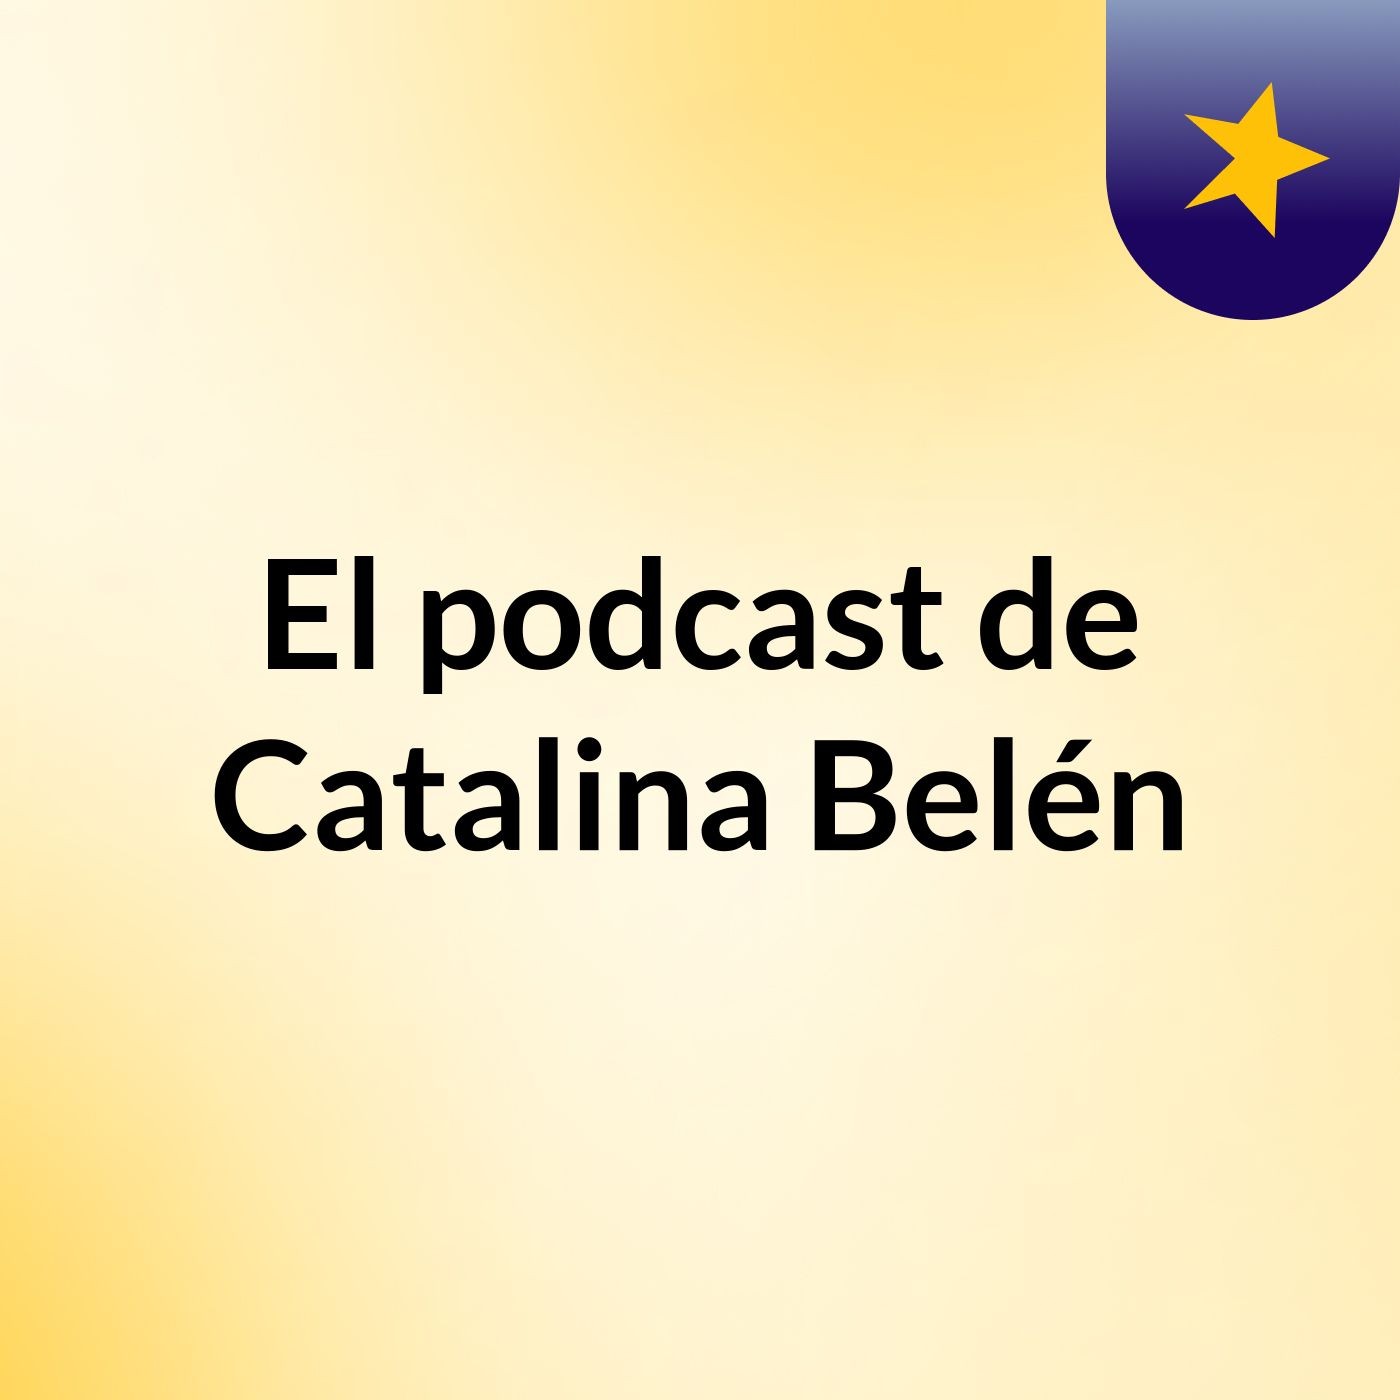 Episodio 10 - El podcast de Catalina Belén